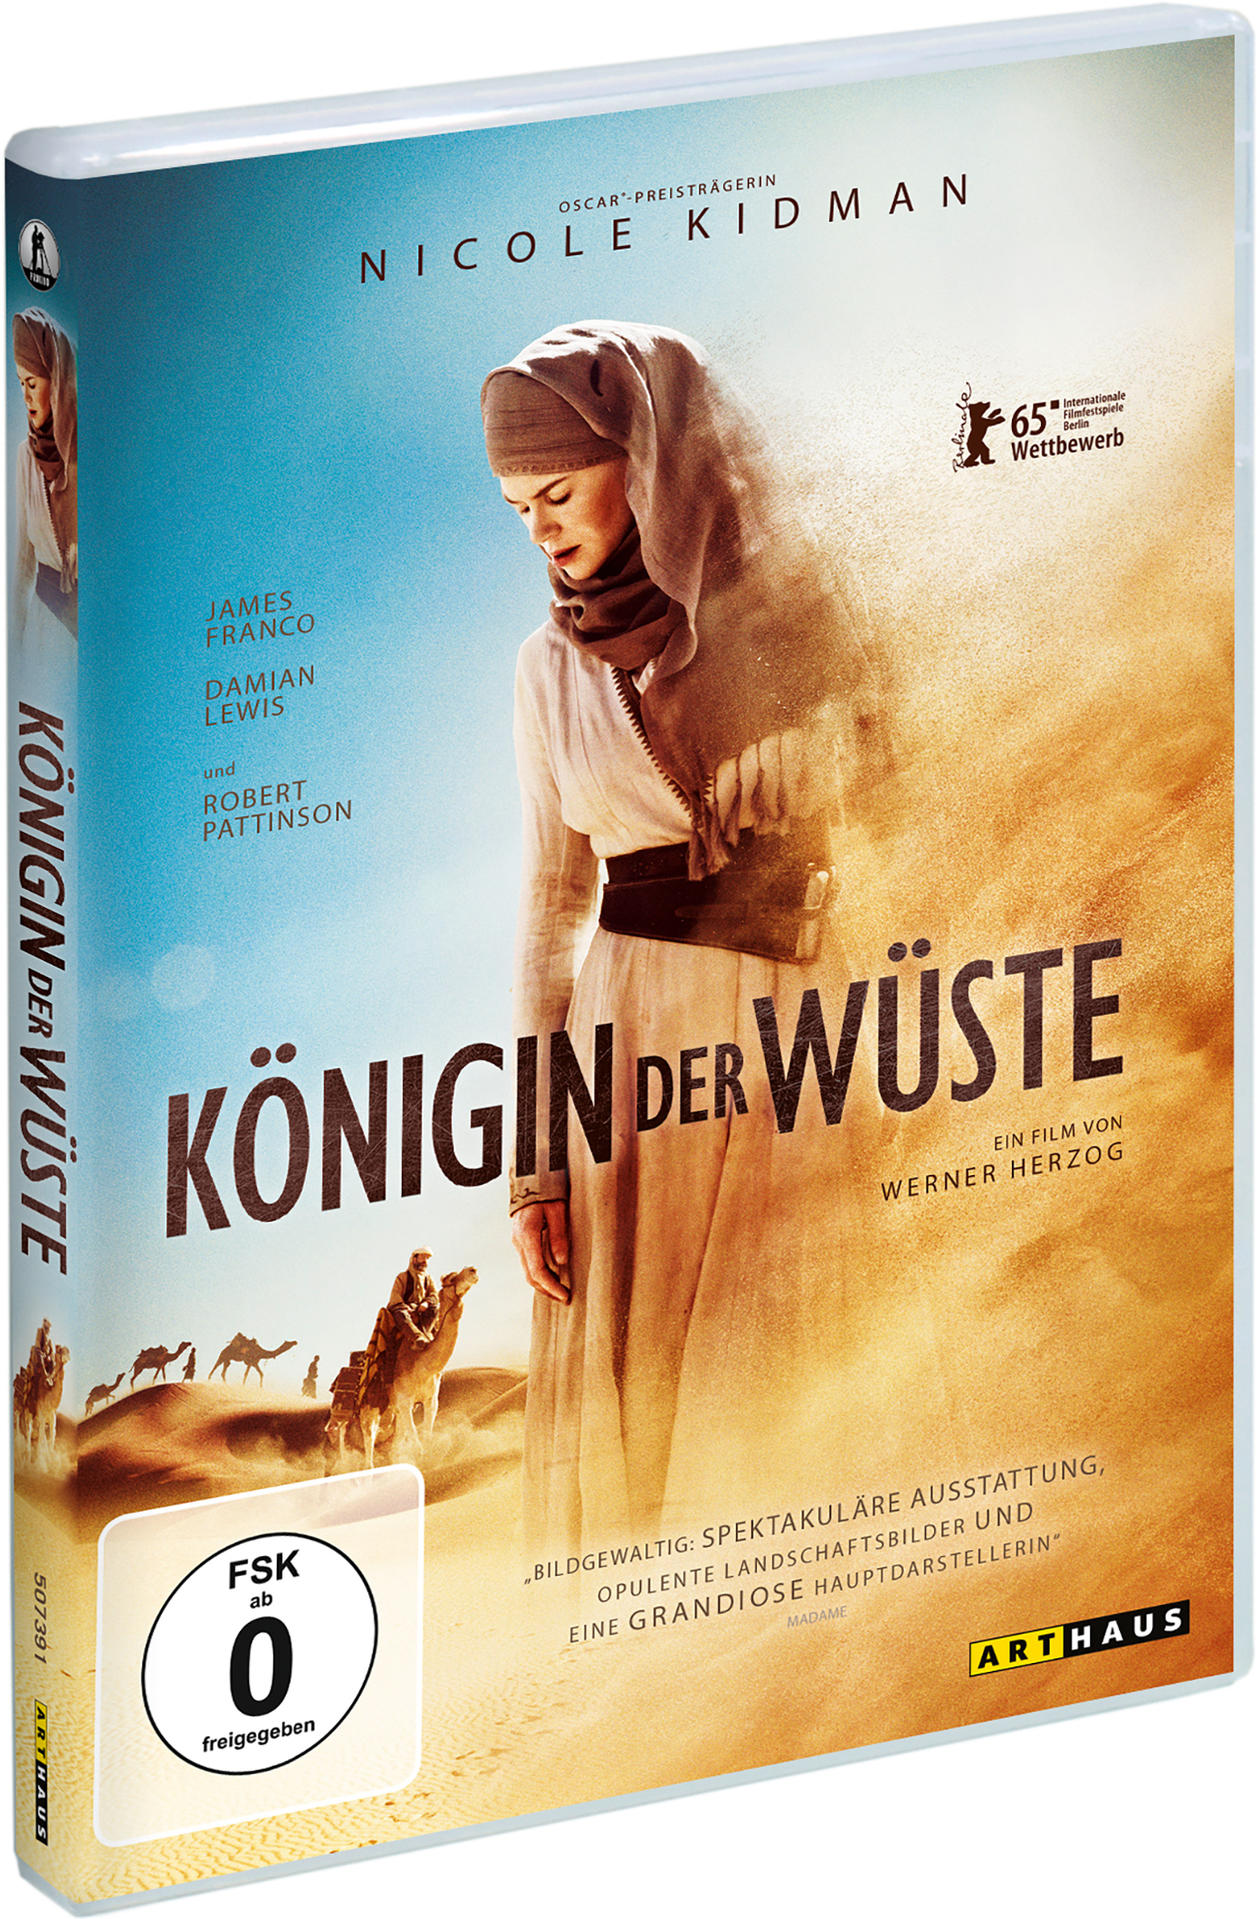 Königin Wüste der DVD